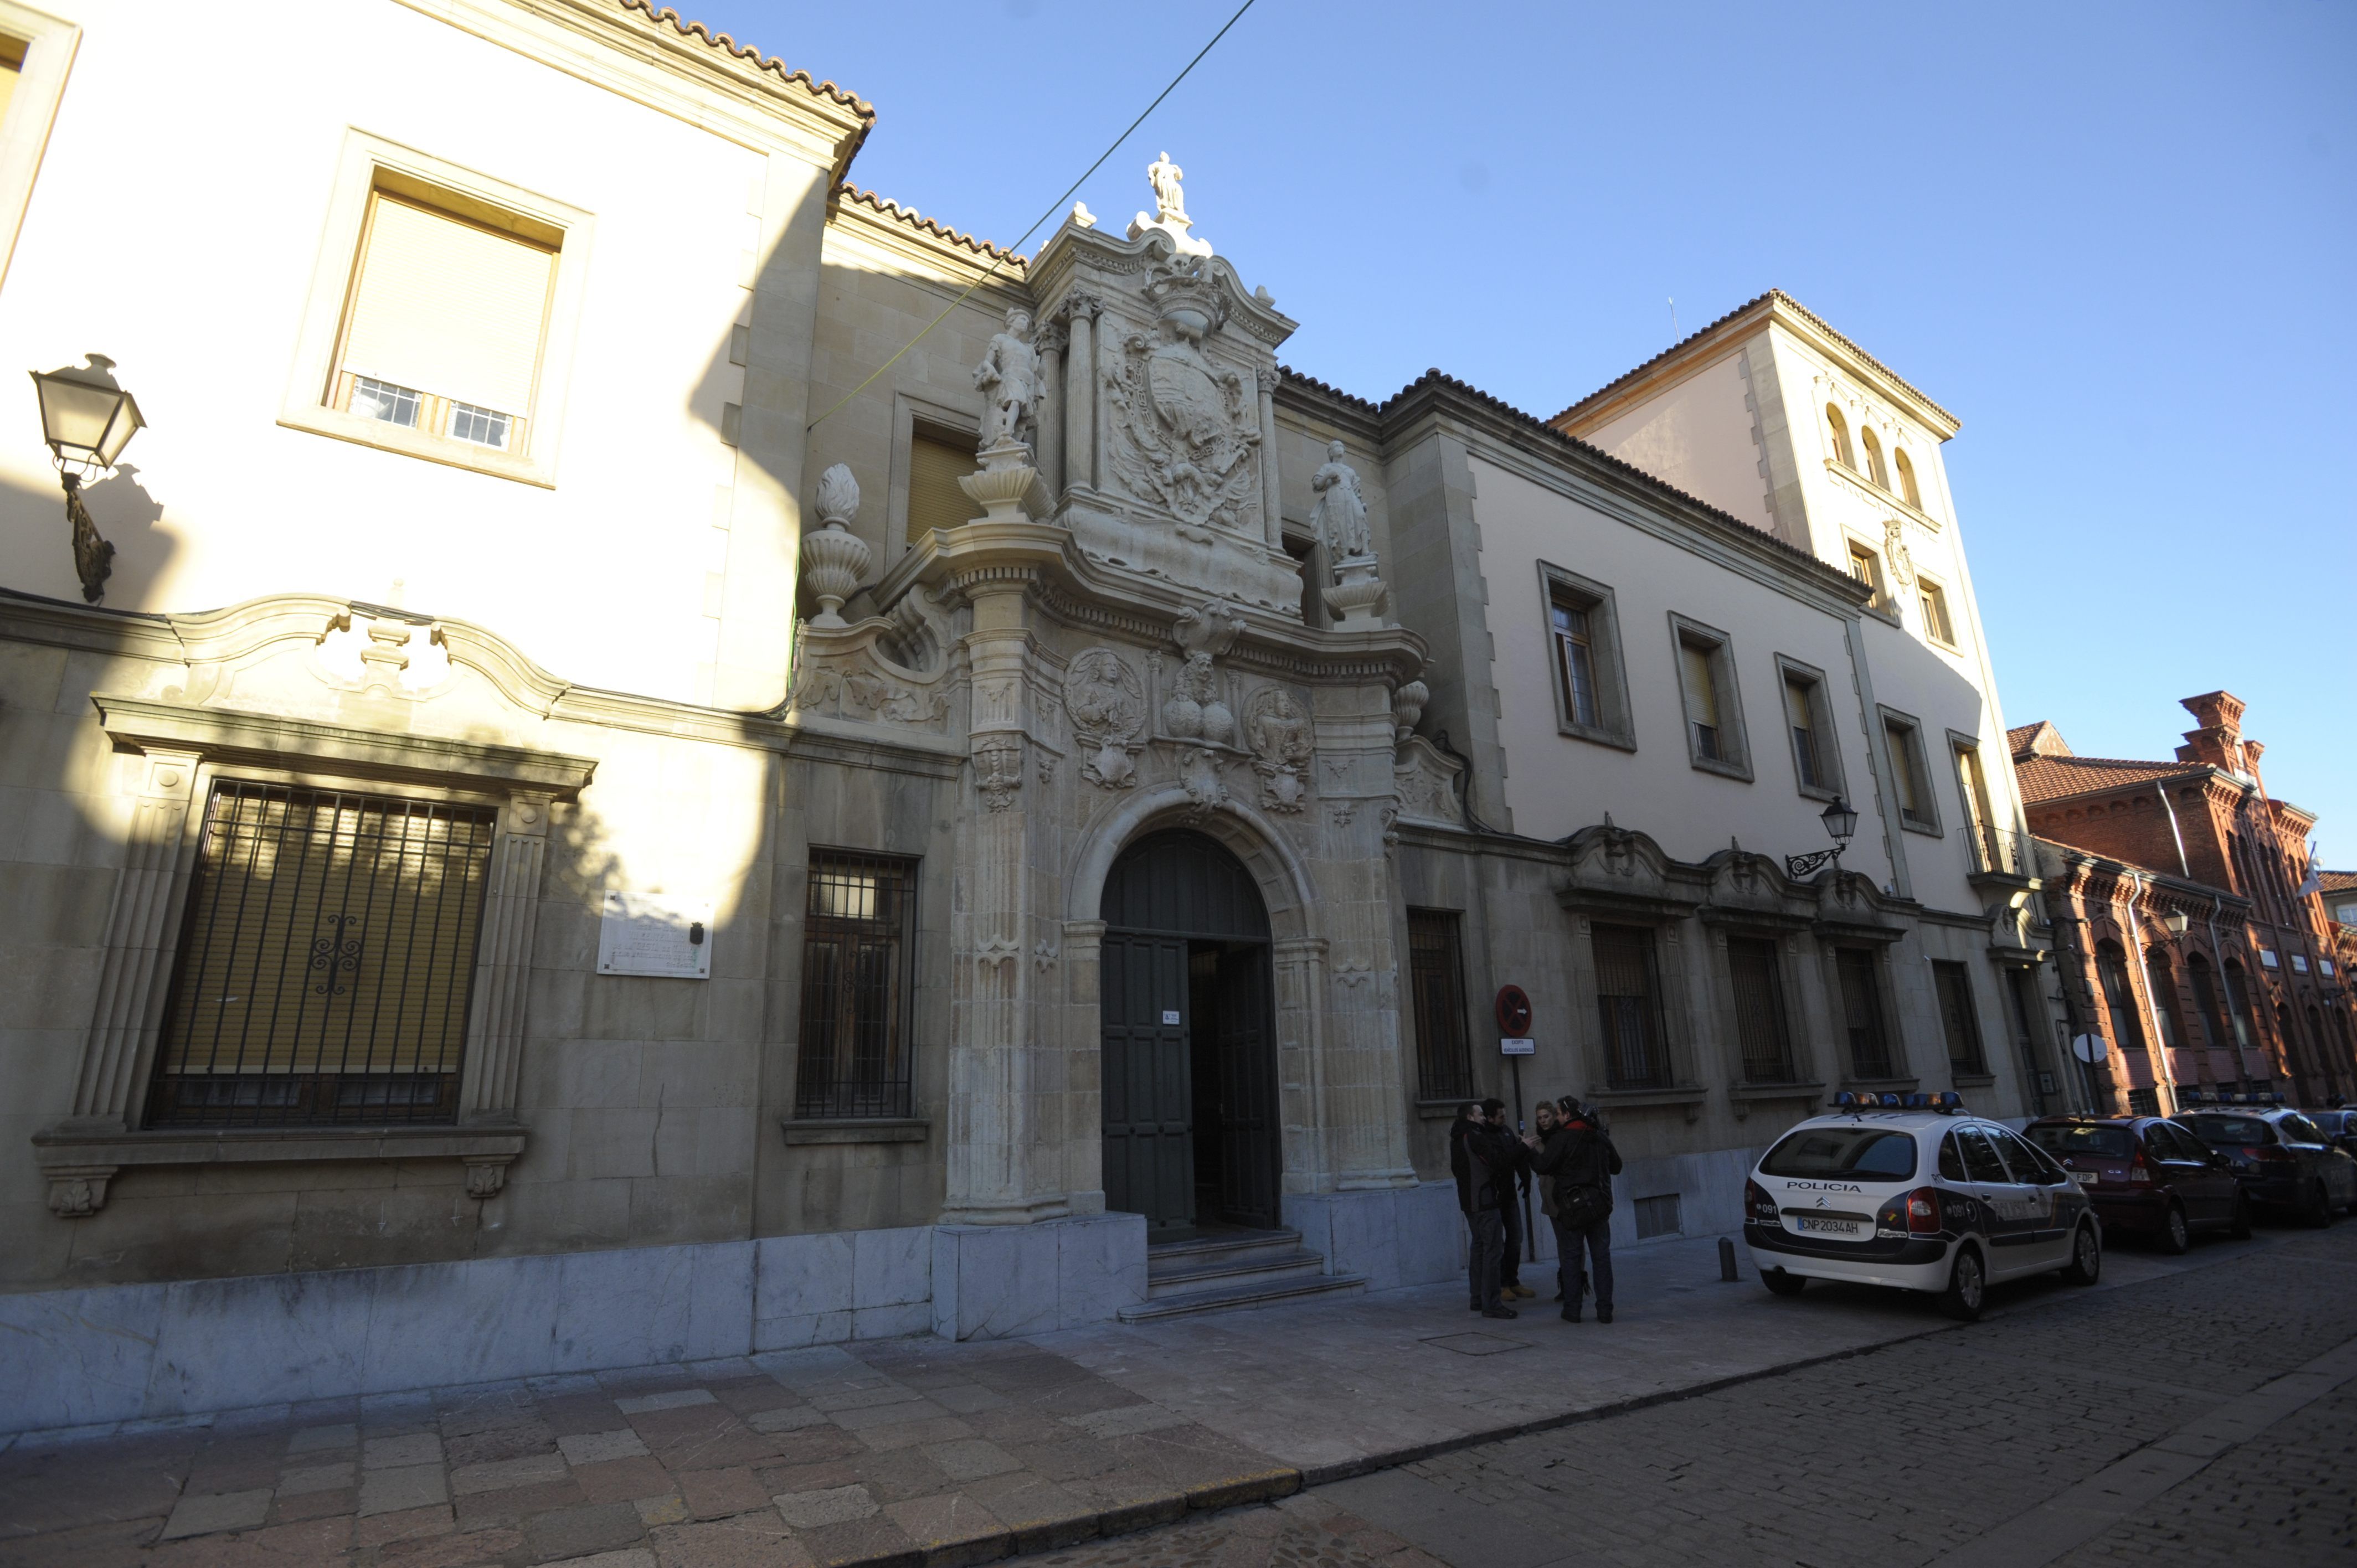 El juicio se celebrará en la Audiencia Provincial de León este martes, 19 de septiembre, a partir de las 13 horas. | DANIEL MARTÍN